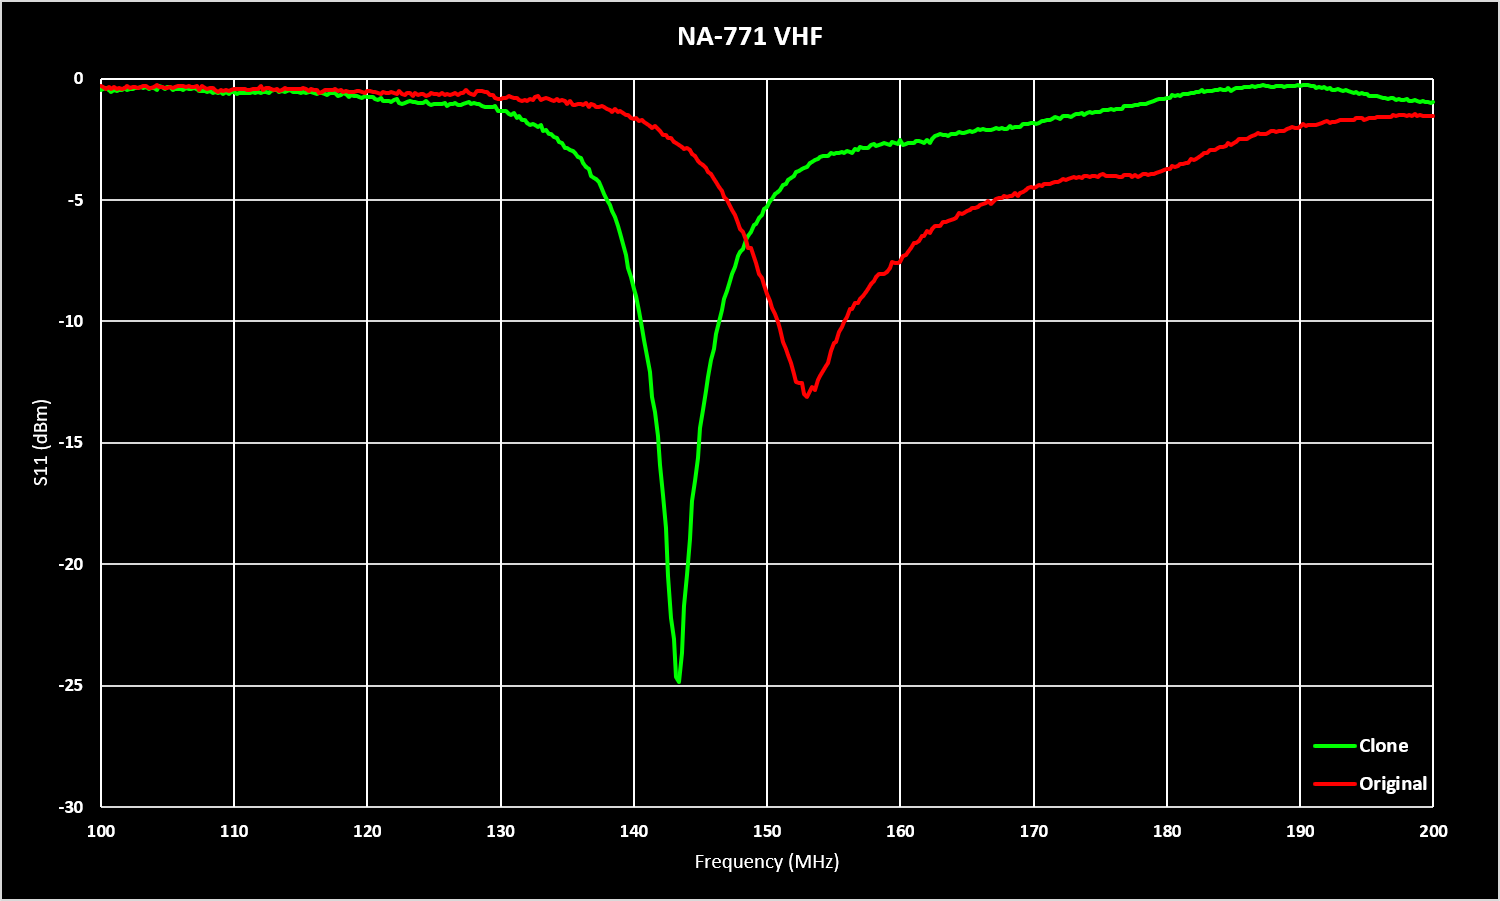 NA-771 Comparison VHF